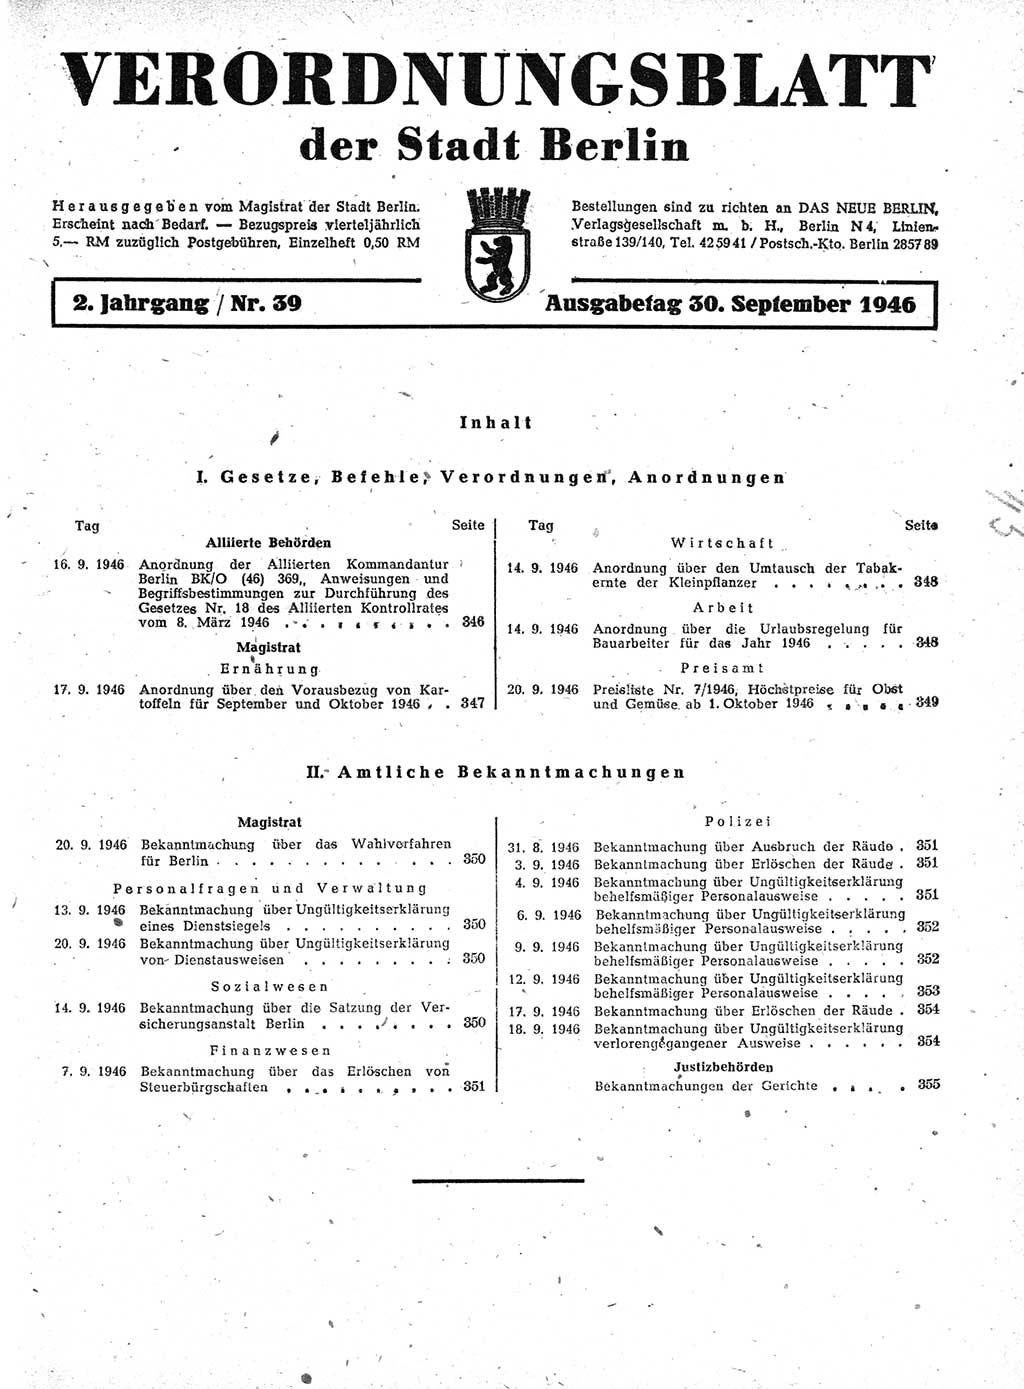 Verordnungsblatt (VOBl.) der Stadt Berlin, für Groß-Berlin 1946, Seite 345 (VOBl. Bln. 1946, S. 345)